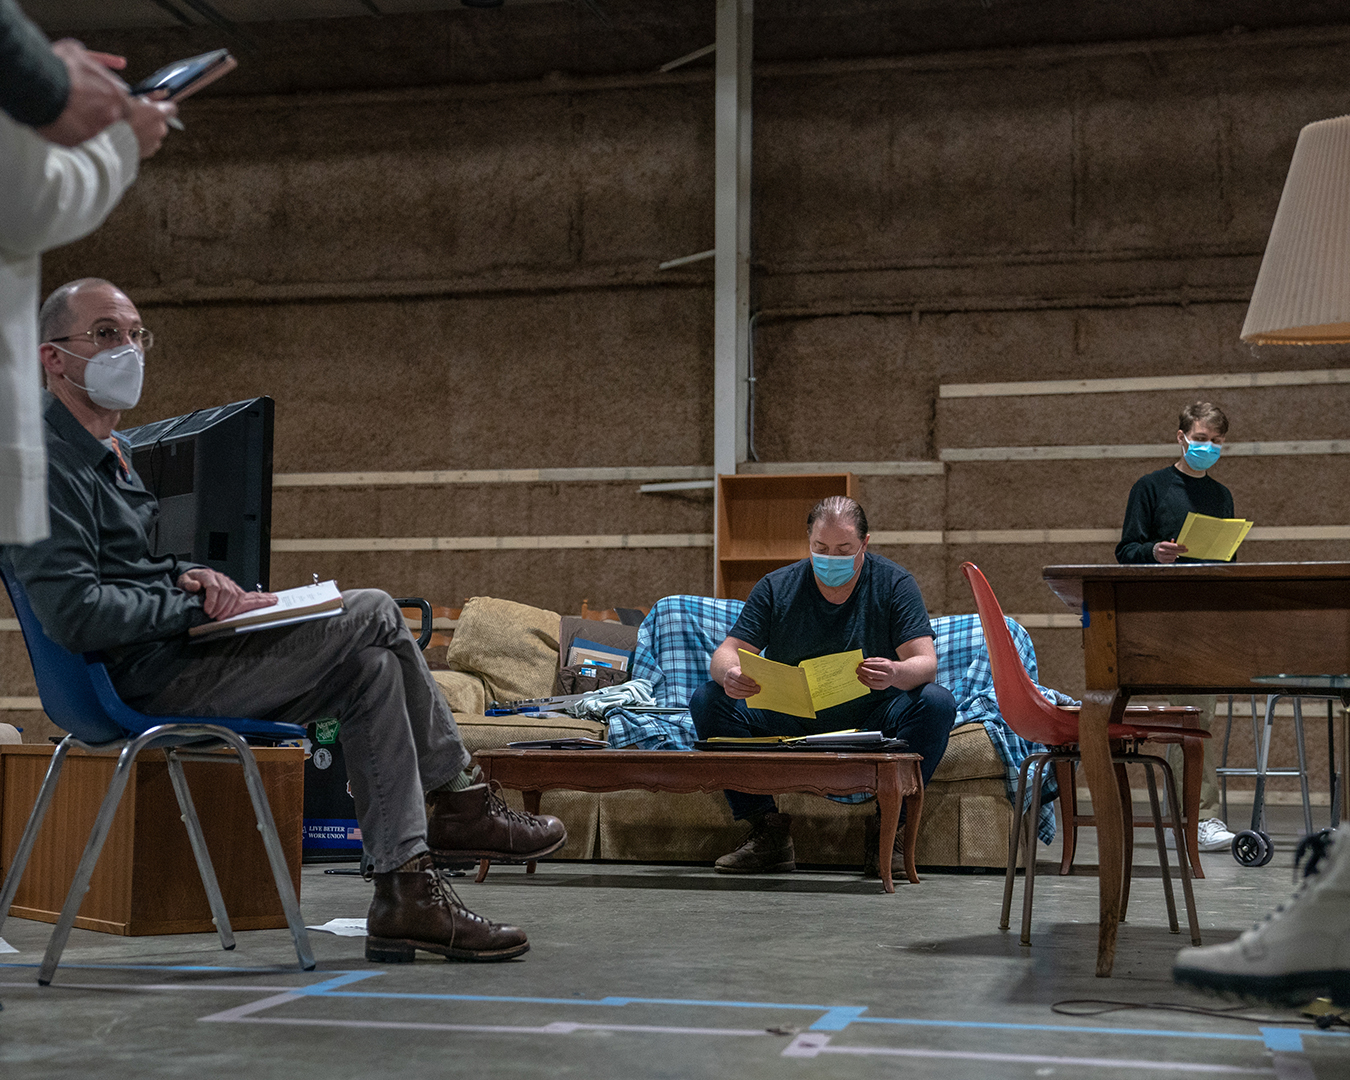 Fotografia da produção do filme A Baleia, na imagem se destacam o diretor Darren Aronofsky e o ator Brendan Fraser, que parece ler um roteiro.